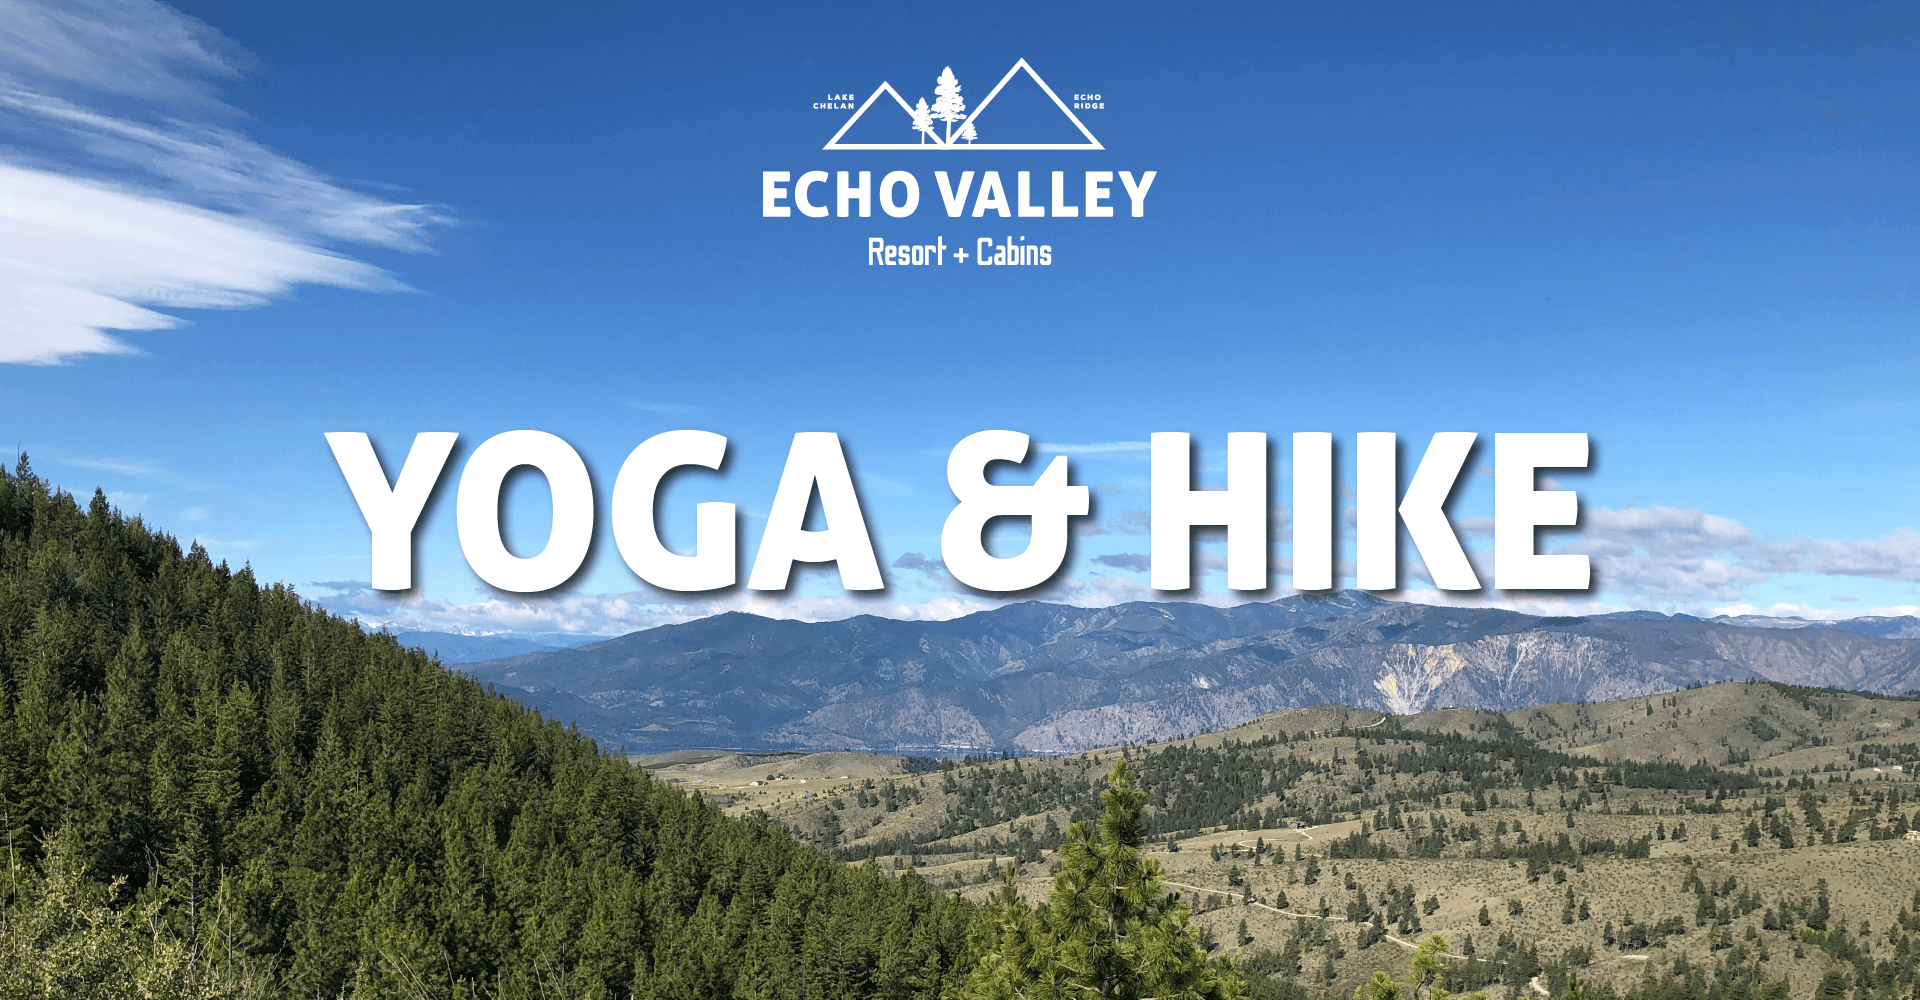 Echo Valley Resort + Cabins – Chelan of Commerce